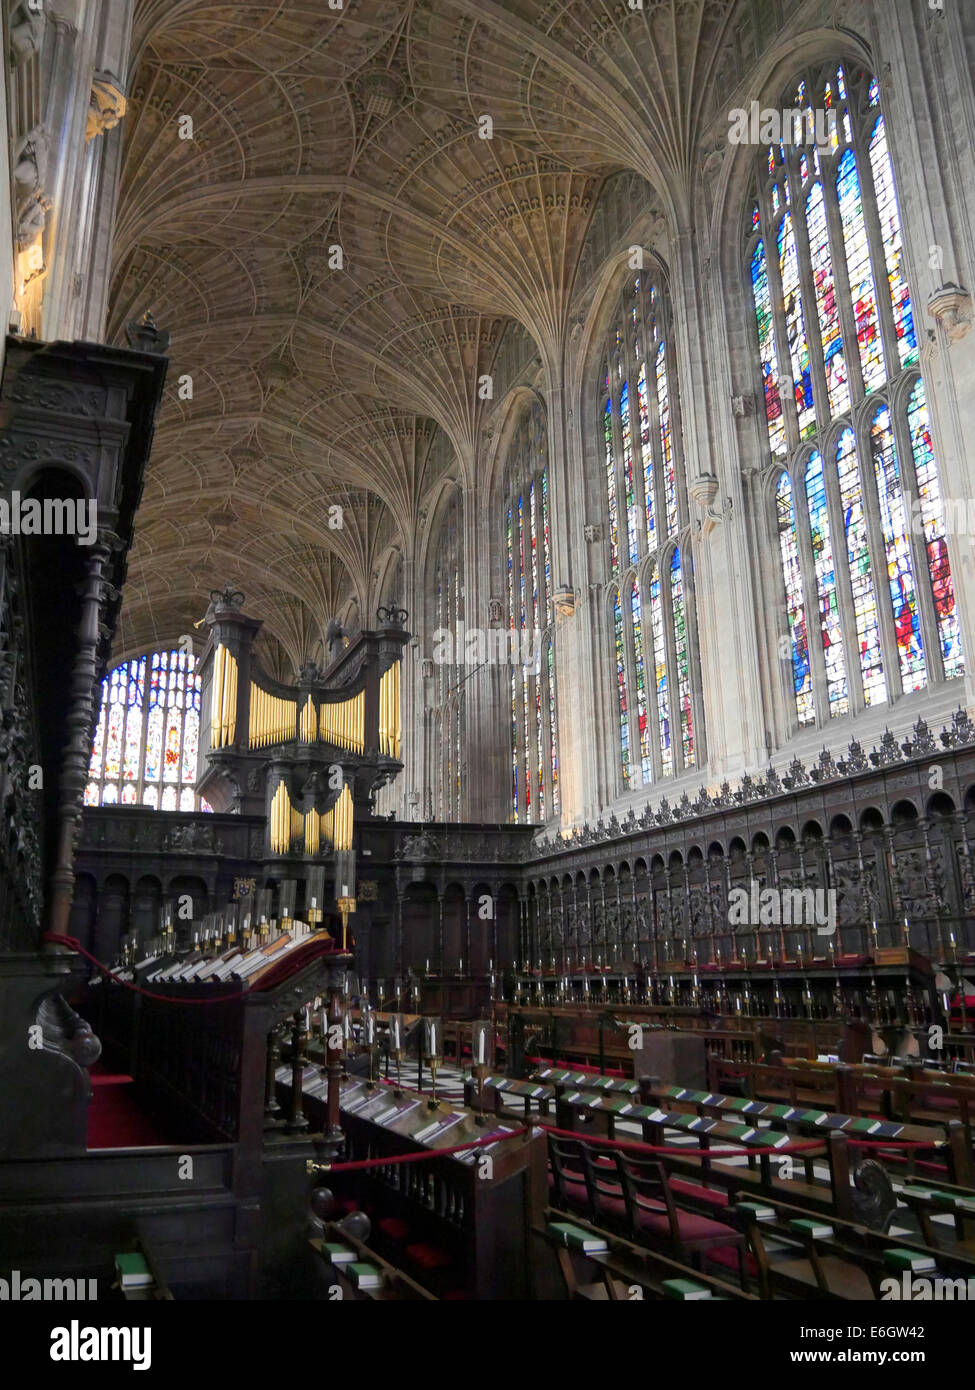 Interno del Kings College Chapel Cambridge Inghilterra, mostrando l'organo della Cappella Foto Stock